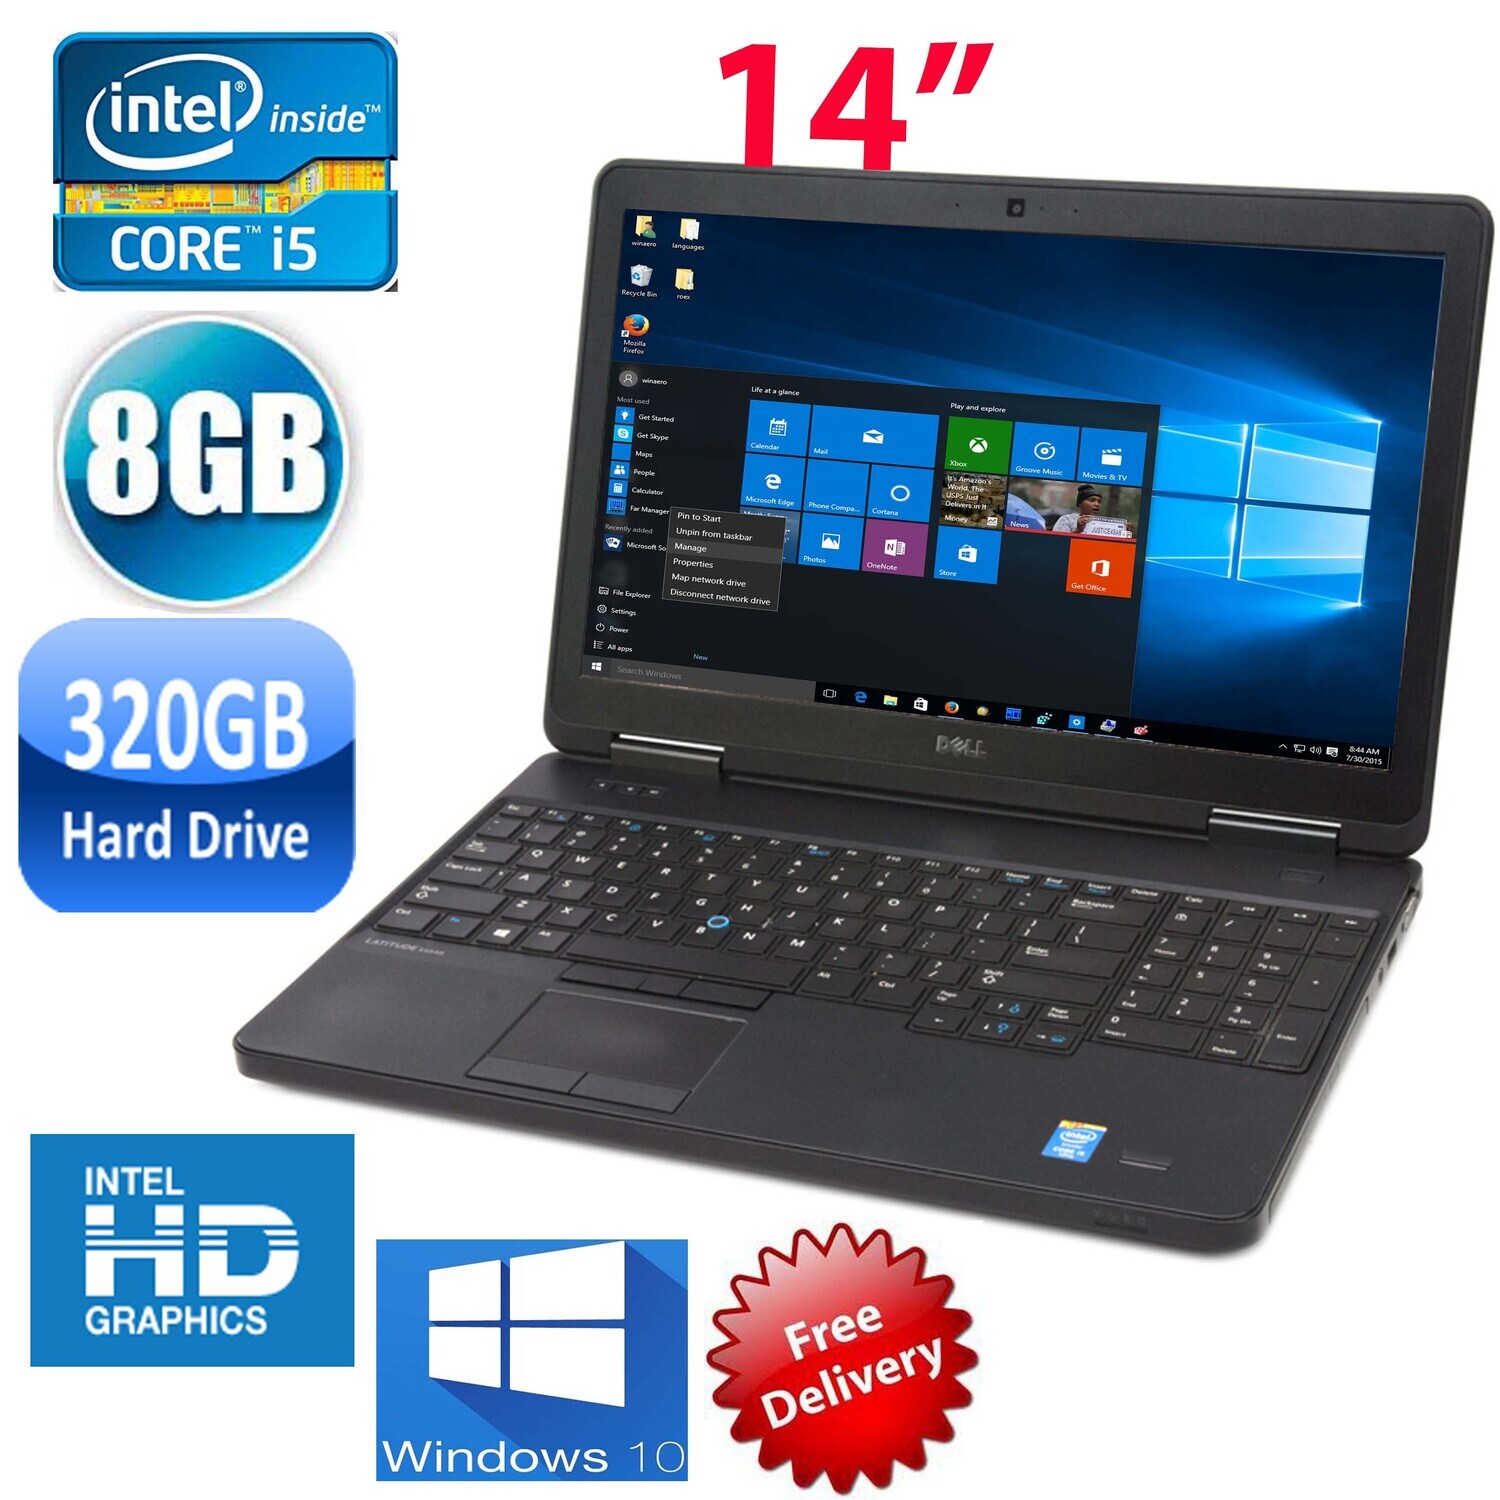 Dell latitude E5440 i5-4310 8GB 320GB-14" HD Graphics Notebook Laptop Win10 PRO